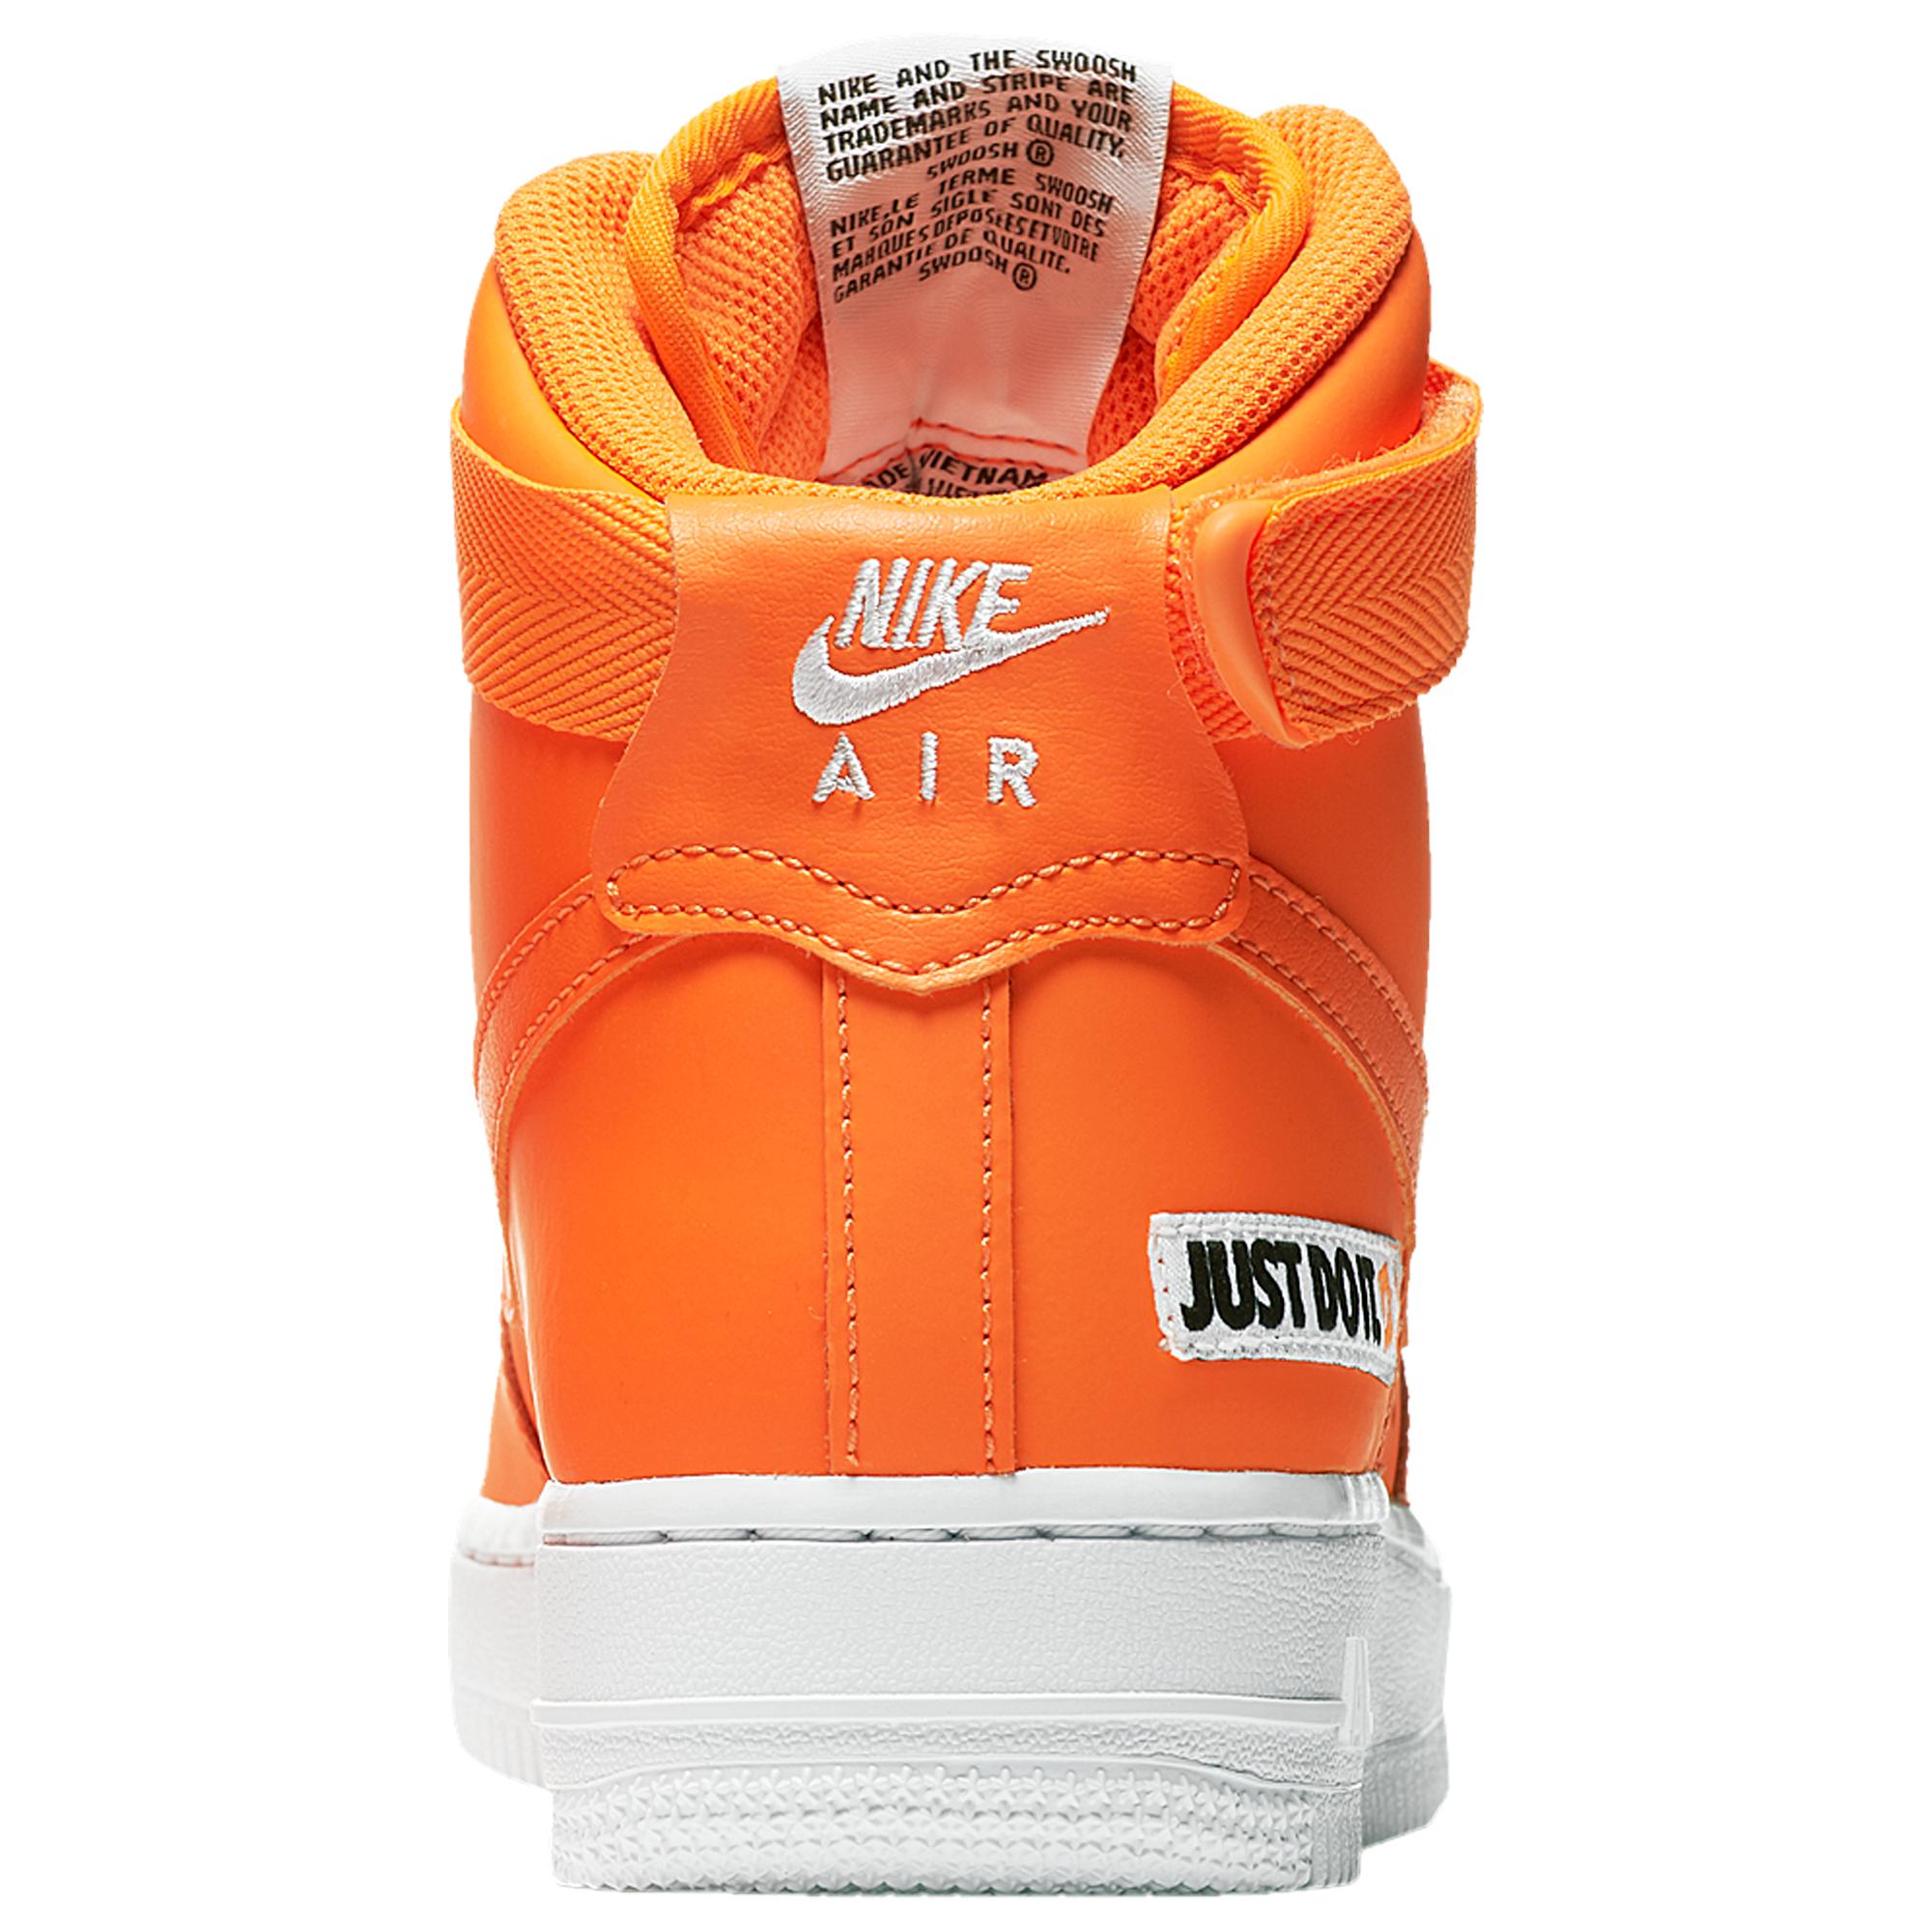 ملابس تنكرية Nike Leather Air Force 1 High Just Do It Pack Orange for Men | Lyst ملابس تنكرية